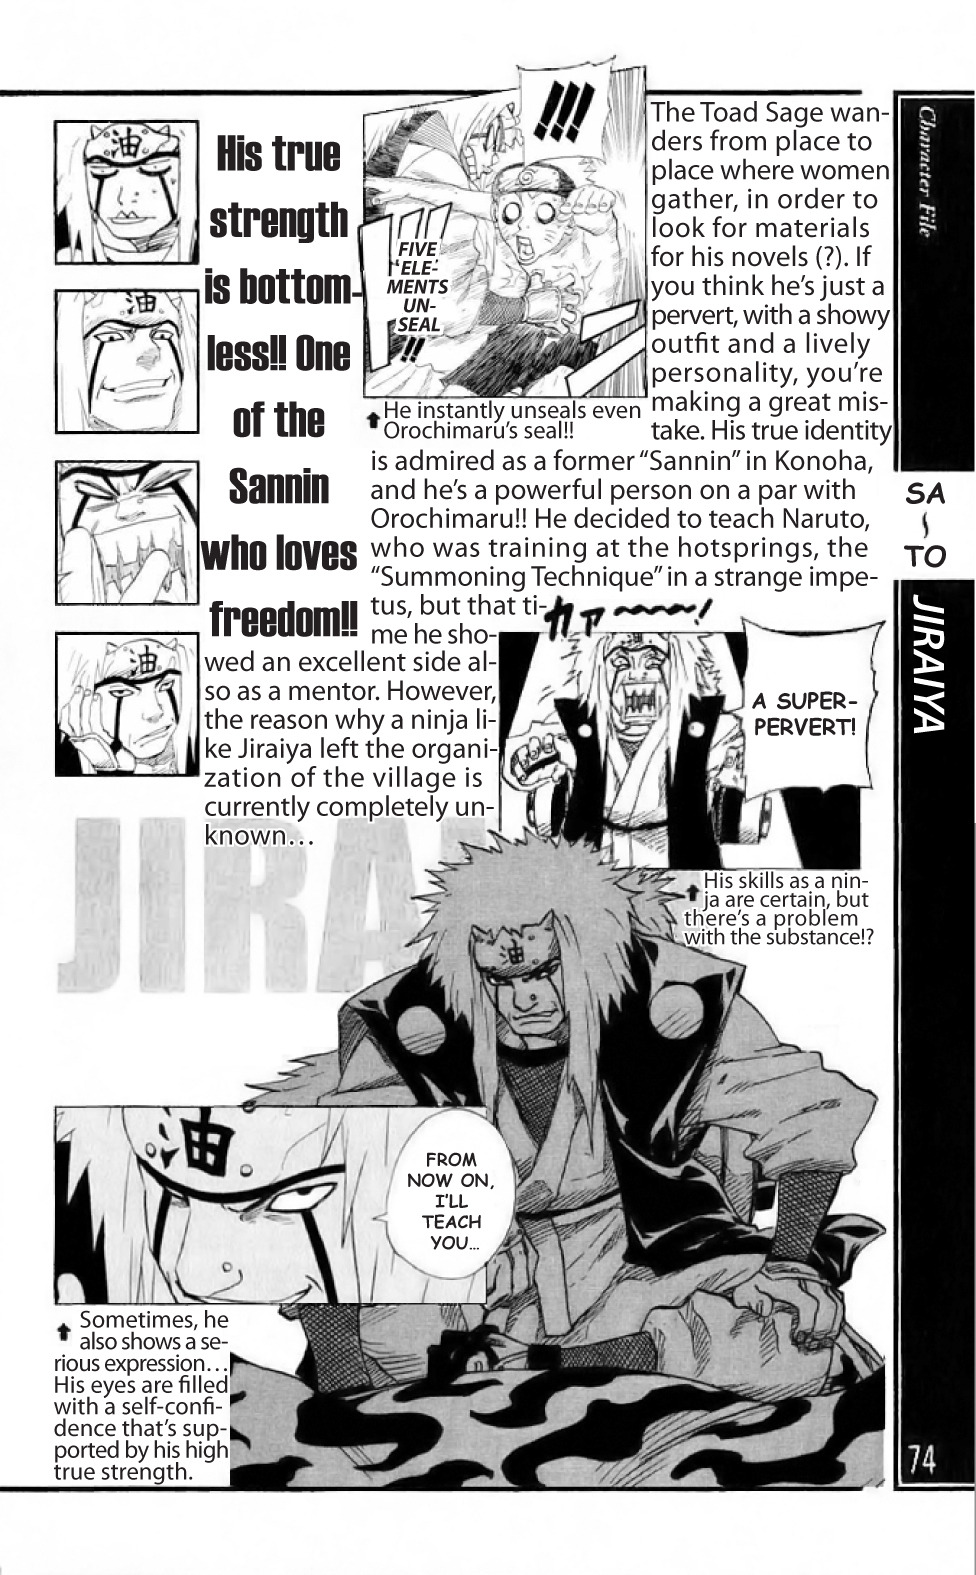 Jiraiya fazer frente a Itachi + Kisame não faz sentido para você? - Página 2 Tumblr_p5fw3fHwJd1urljpmo2_1280